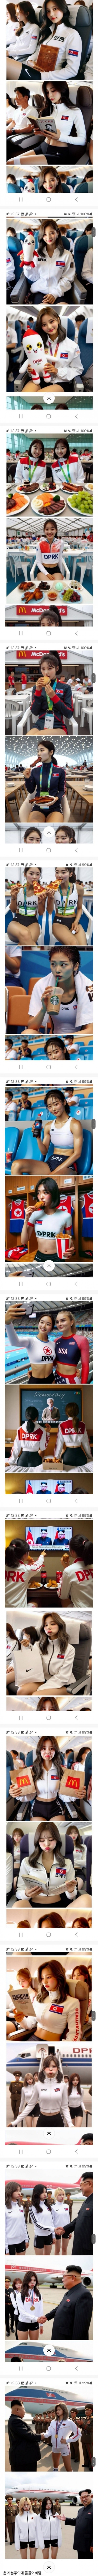 Ai가 그린 파리 올림픽 나온 북한 여자 선수들